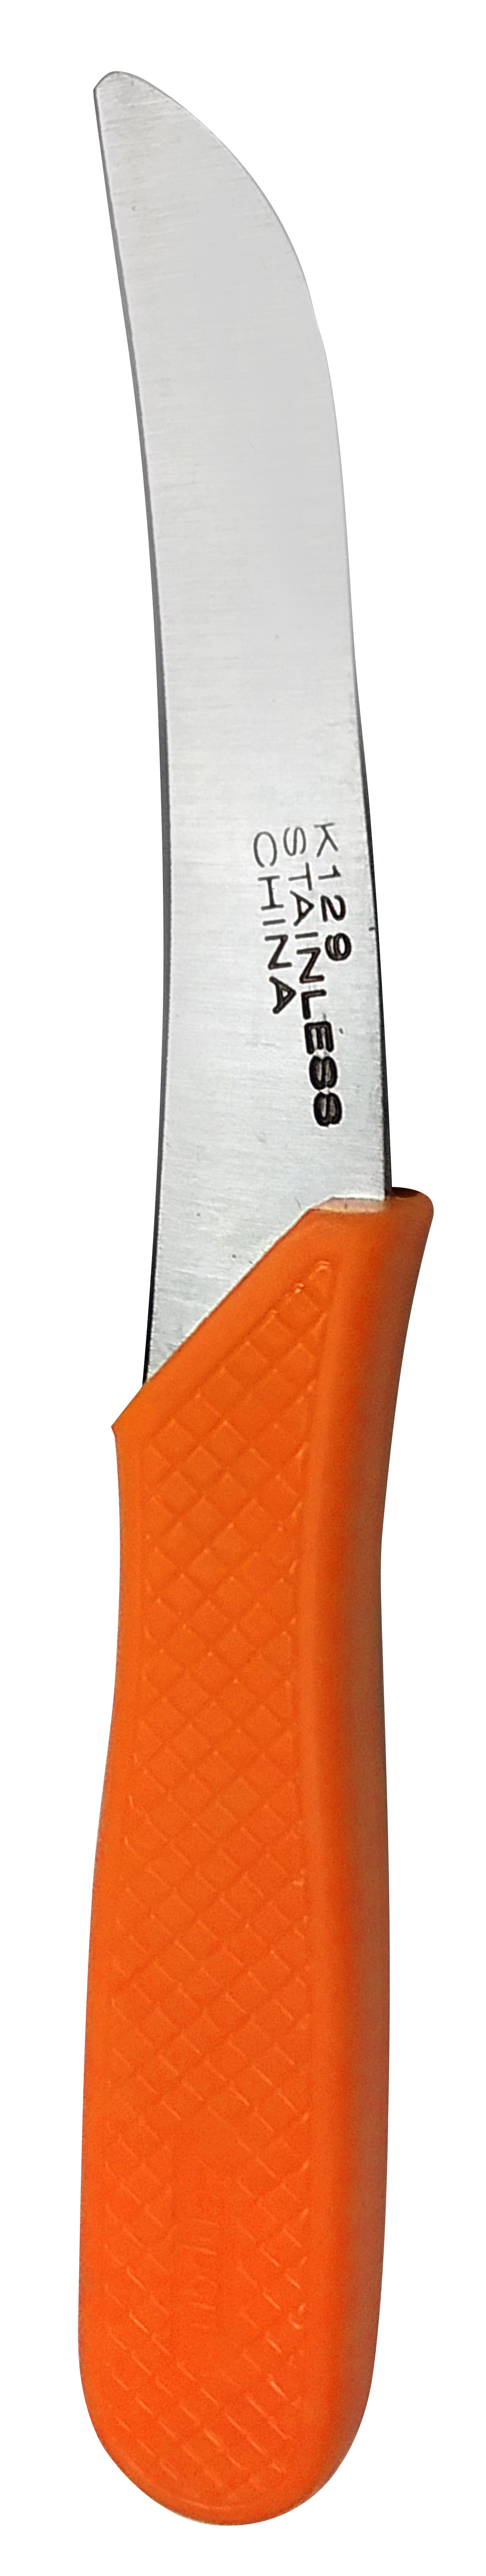 Zenport Mushroom Knife K129 Slim Blade Fruit/Mushroom, 2.75-Inch Stainless Steel Blade